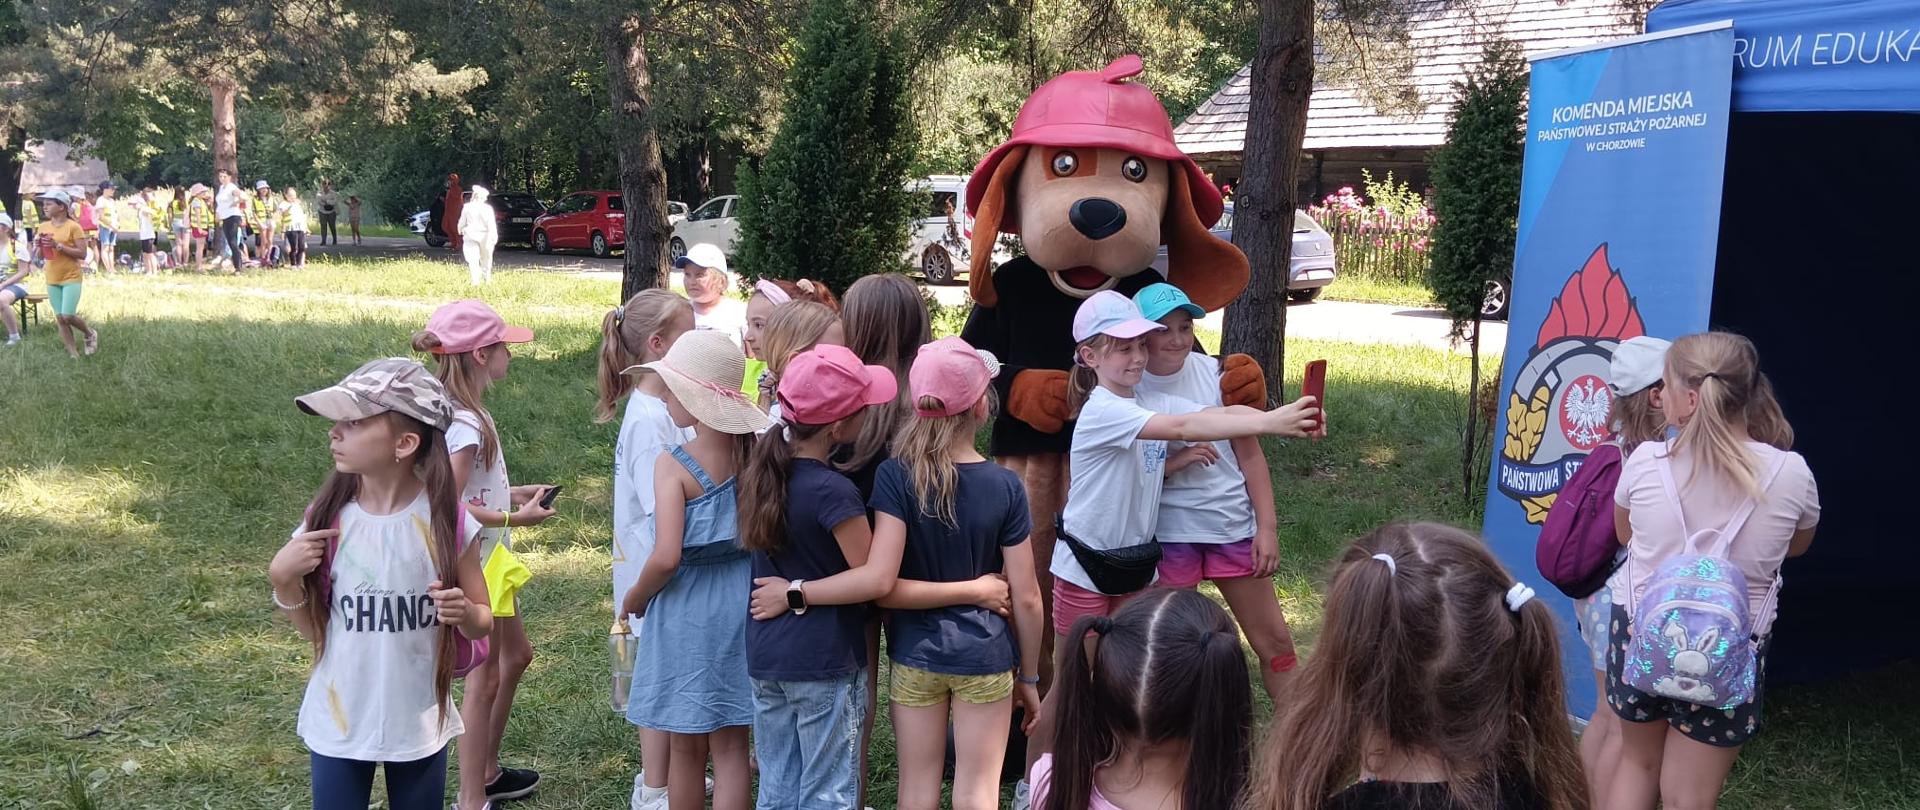 Zdjęcie przedstawia maskotkę "Psa Żarka" oraz grupę dzieci